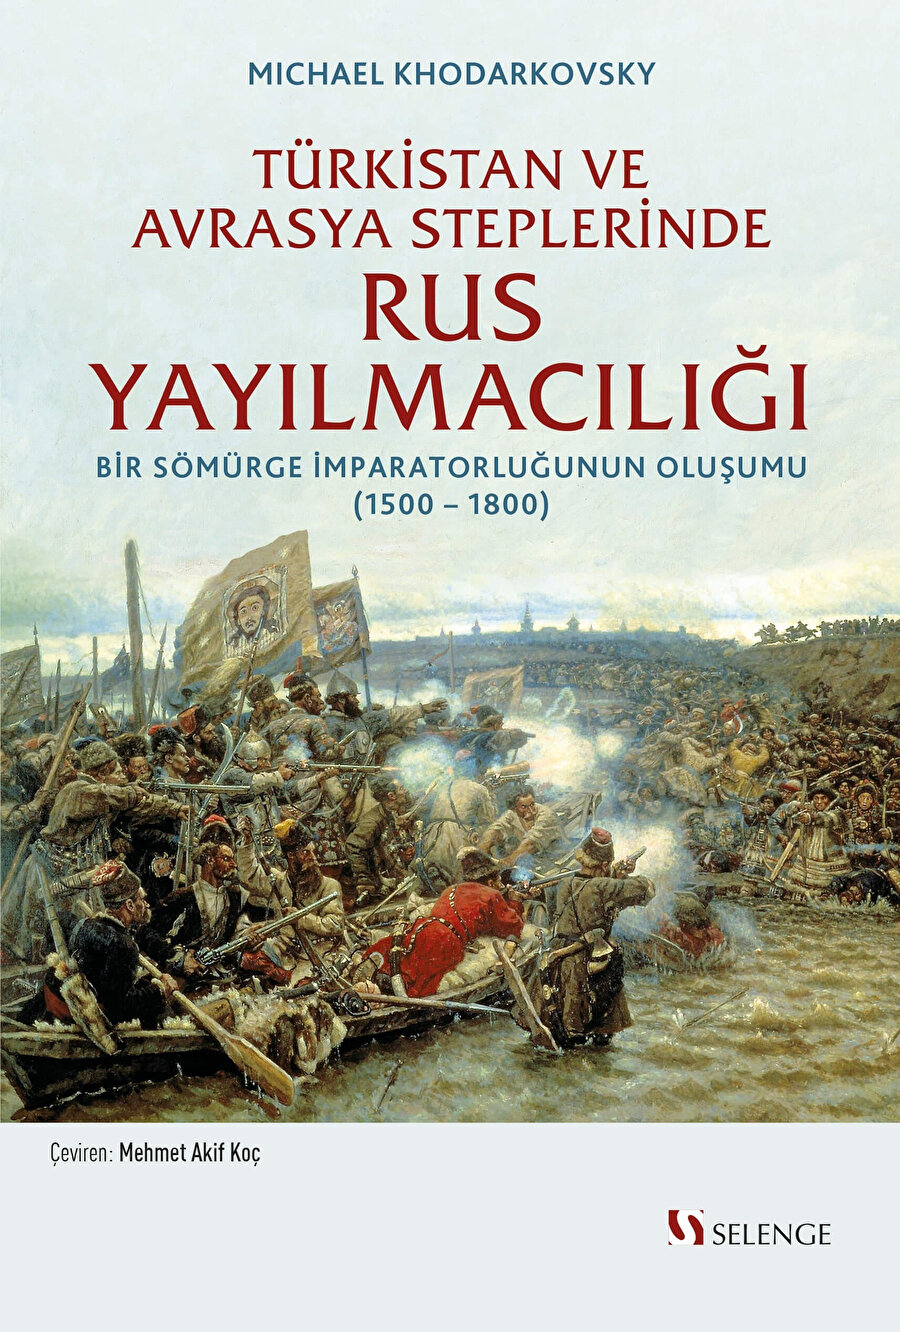 Rusların Türkistan coğrafyası ve Avrasya steplerine yayılması ve kolonizasyon faaliyetlerini ayrıntılarıyla tartışan kitap, Türk tarihini ve modern Türk dünyasının oluşumunu da yakından ilgilendiriyor.